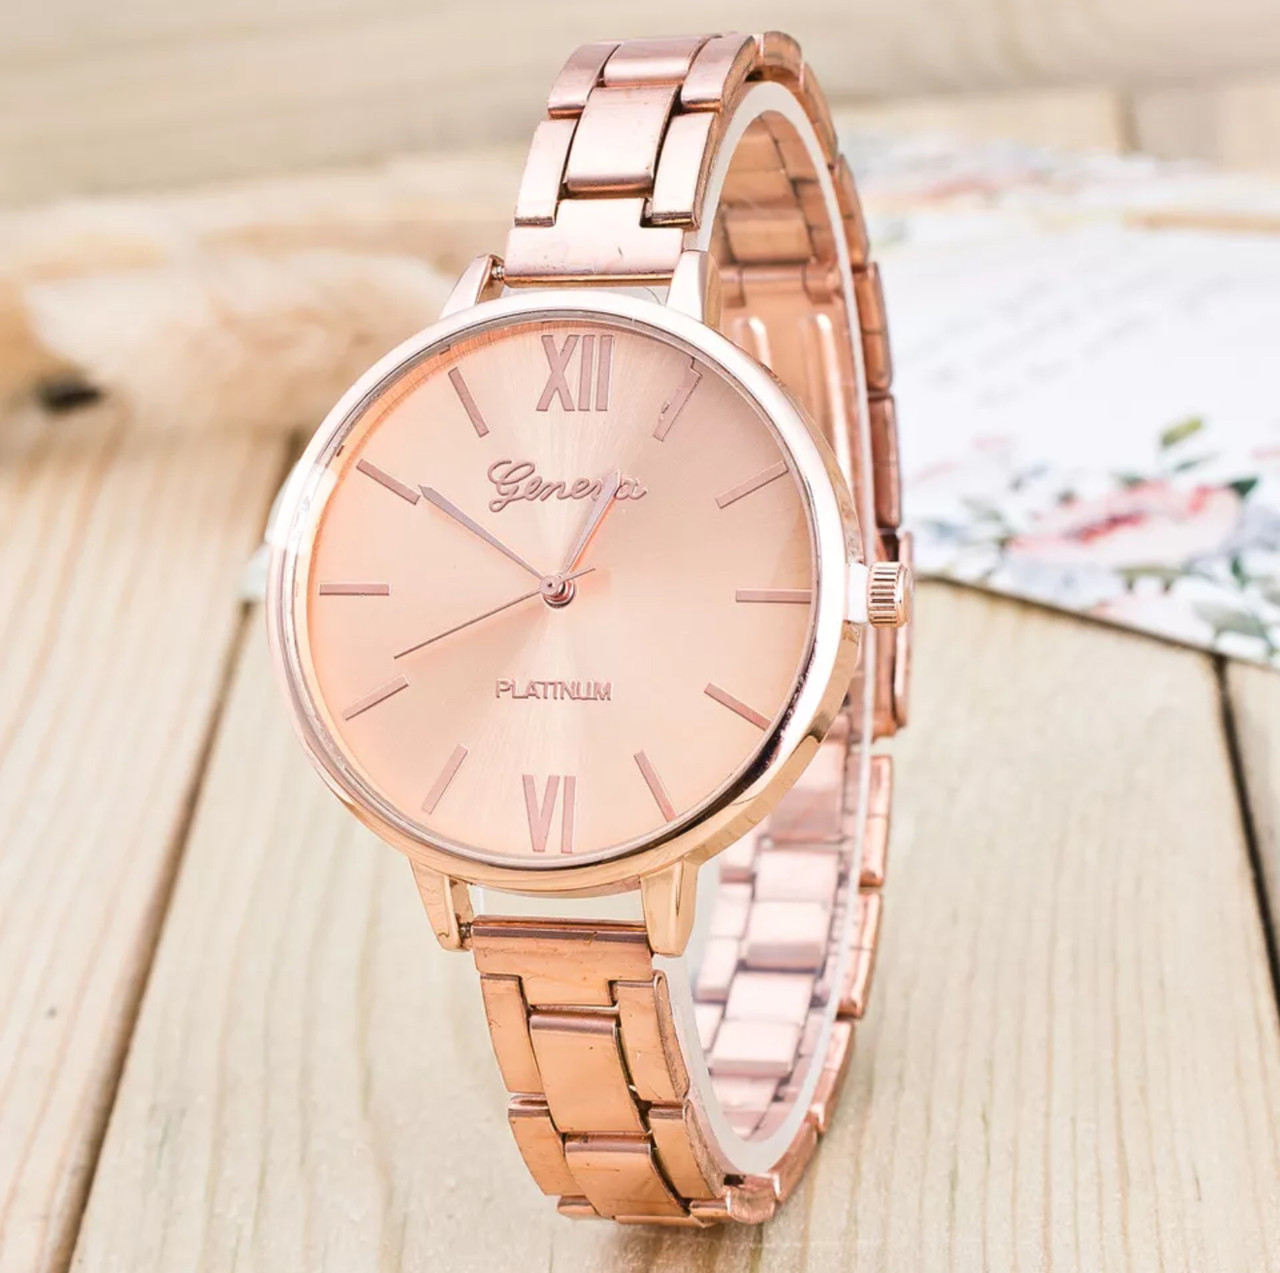 Жіночий годинник на руку, з рожевим браслетом «Geneva» (rose gold)